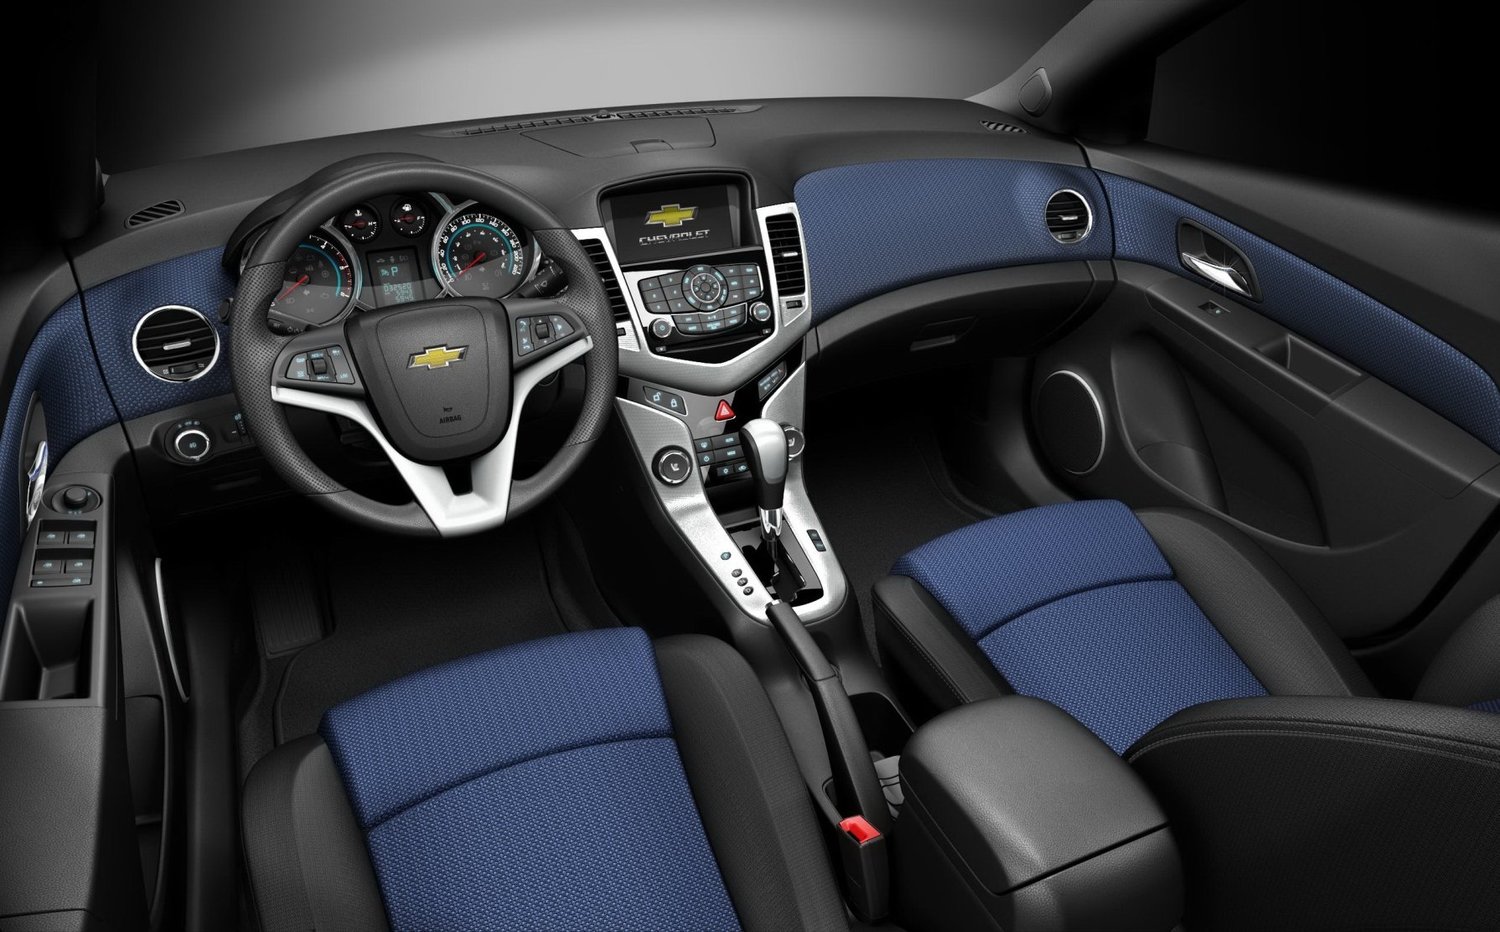 хэтчбек 5 дв. Chevrolet Cruze 2009 - 2012г выпуска модификация 1.6 AT (113 л.с.)